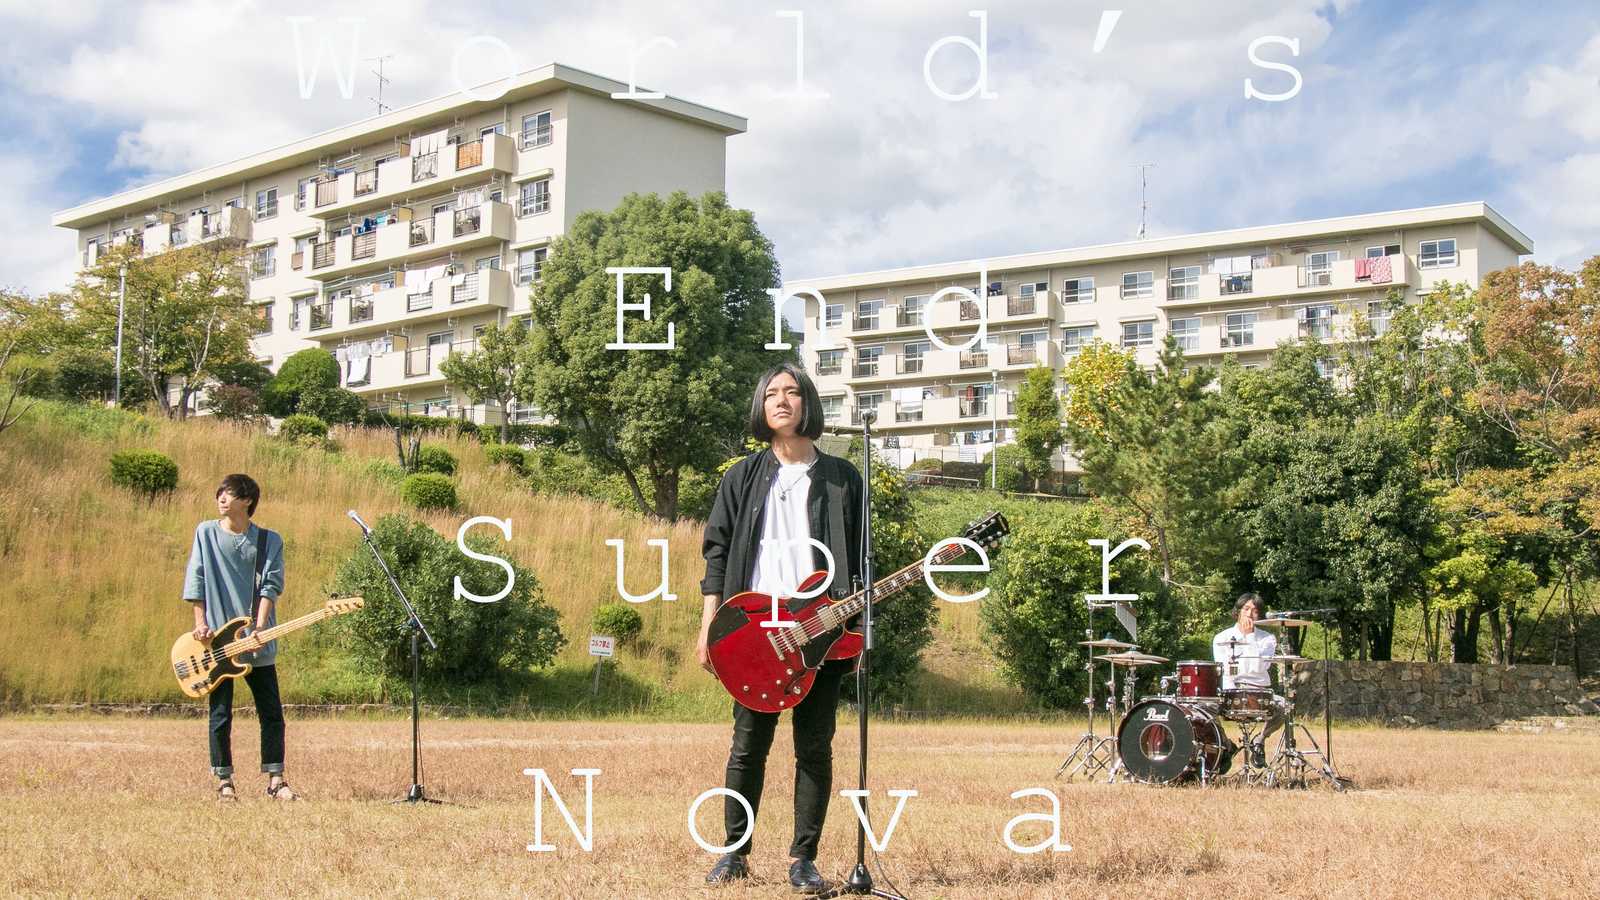 World's End Super Novan uusi minialbumi esittelee vastaparin kuuden vuoden takaiselle laululle © World's End Super Nova. All rights reserved.